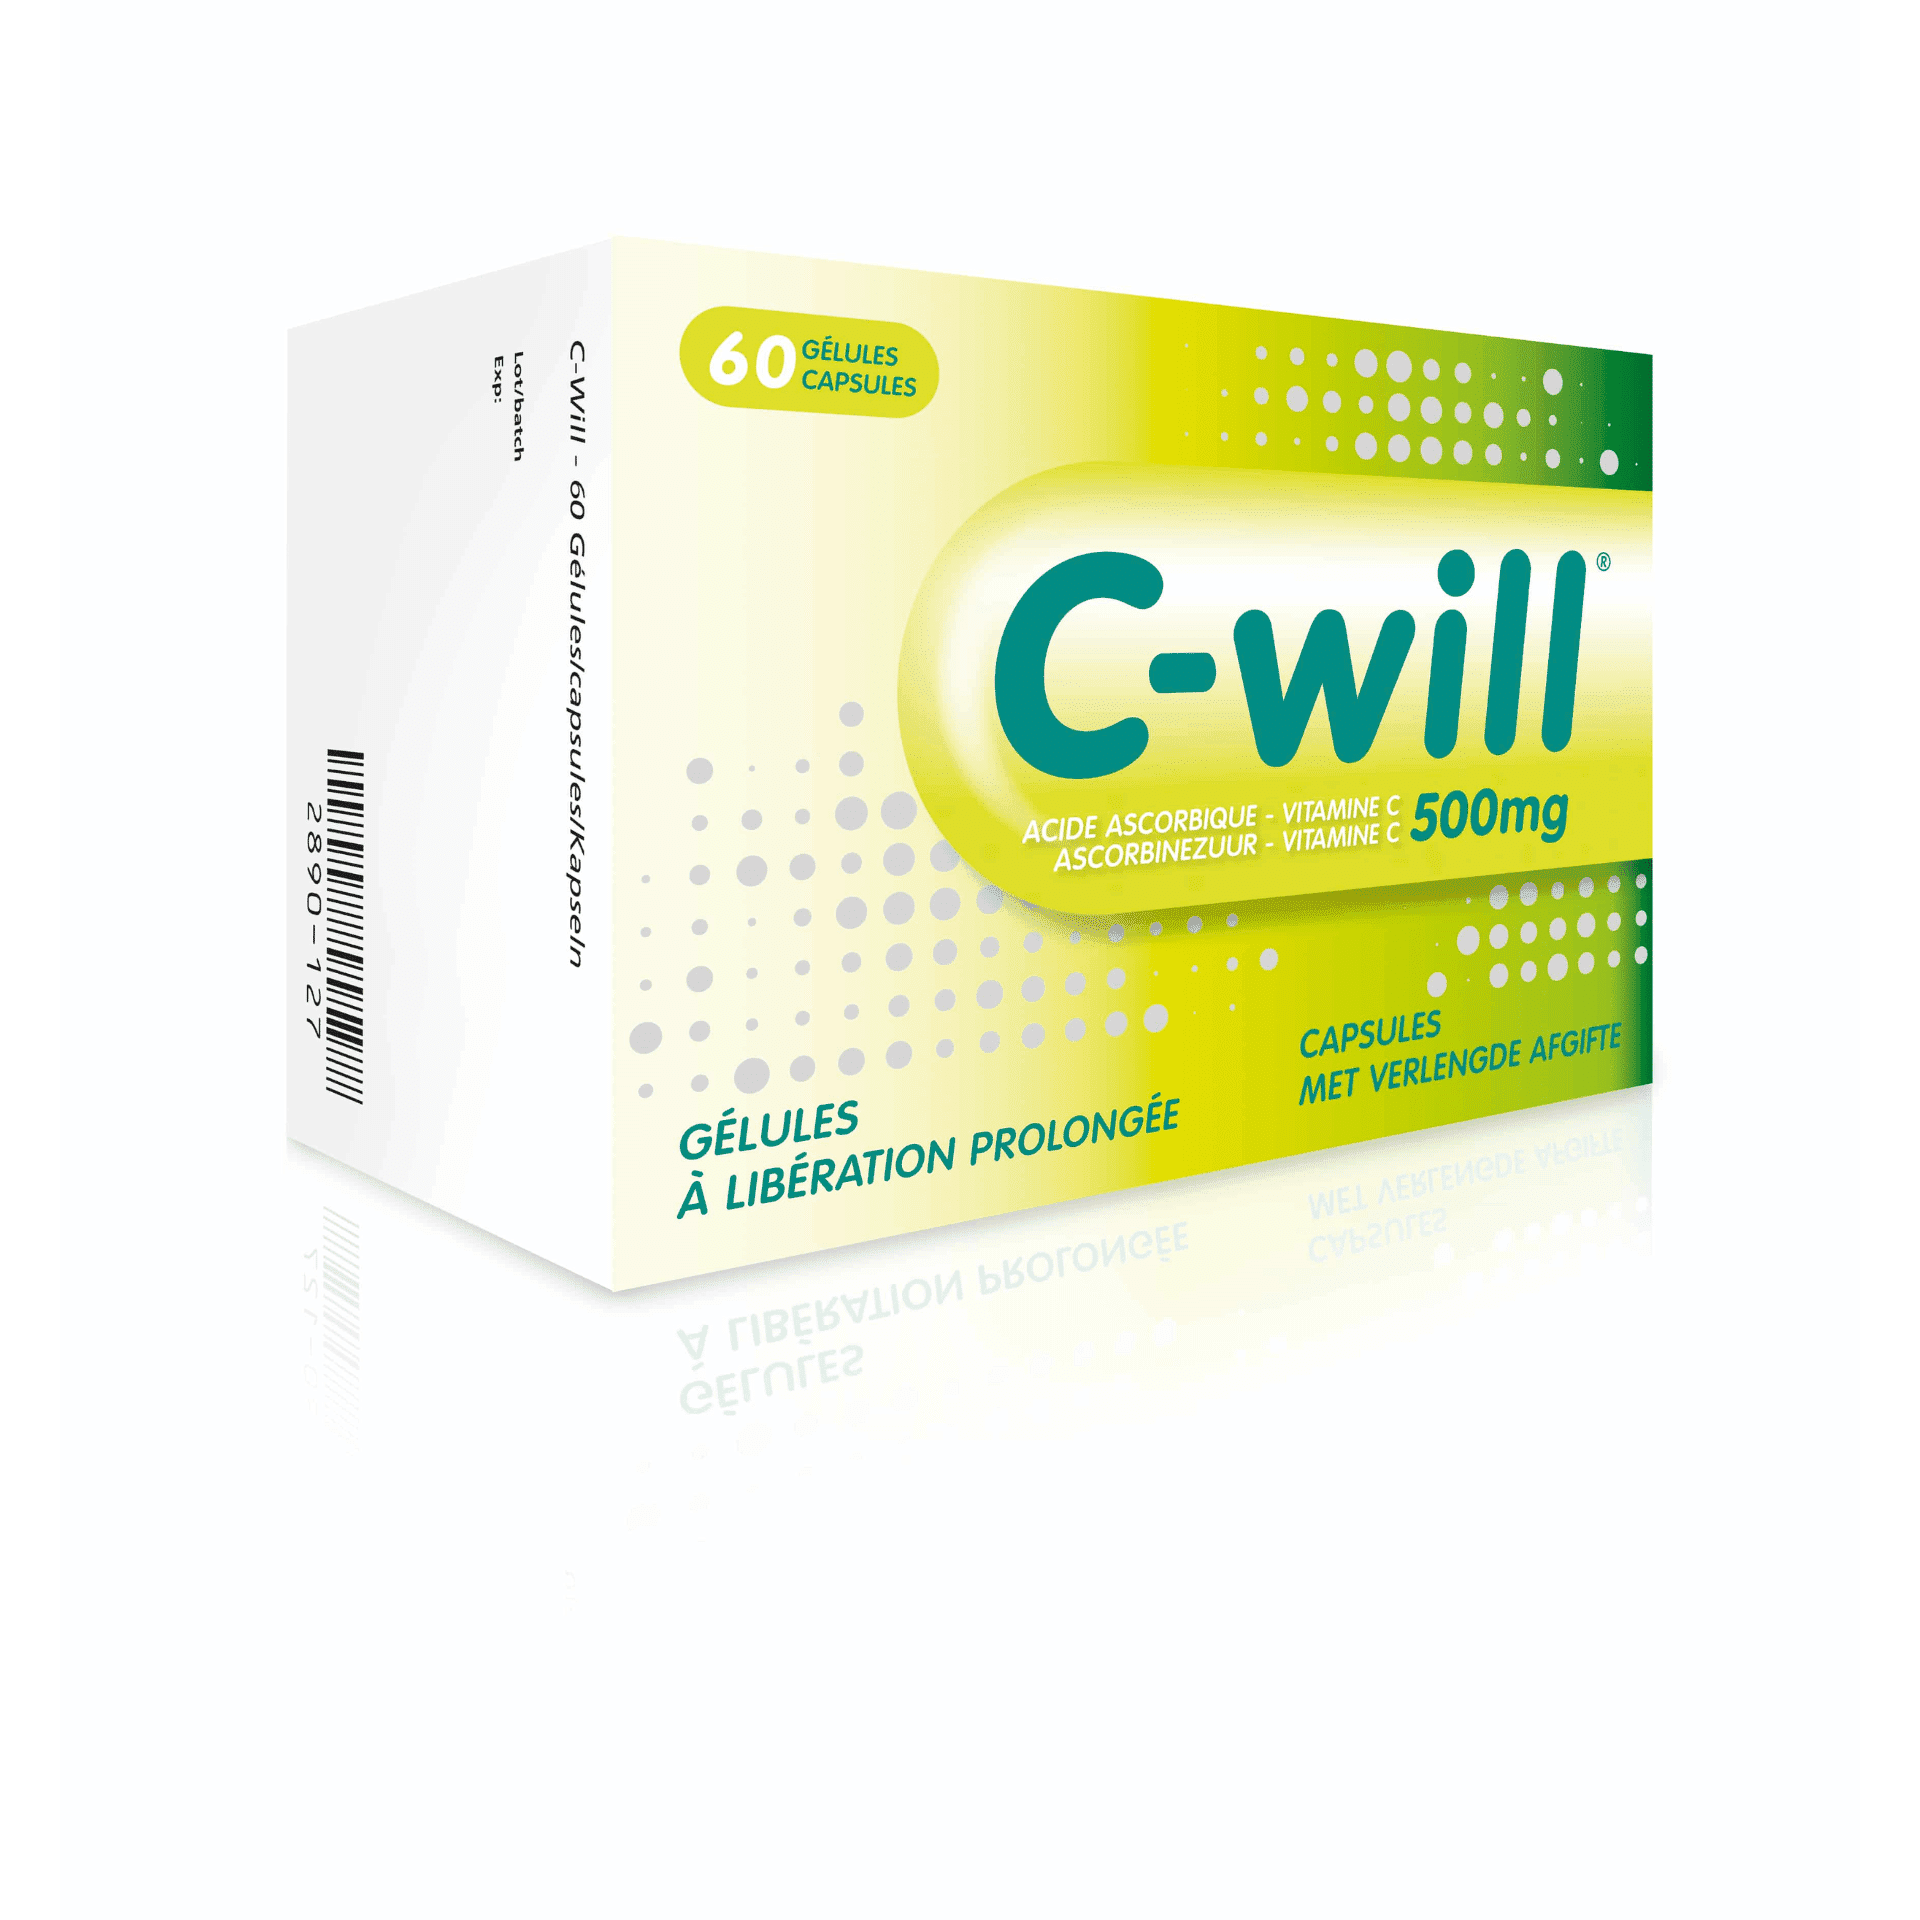 C-Will 60 capsules